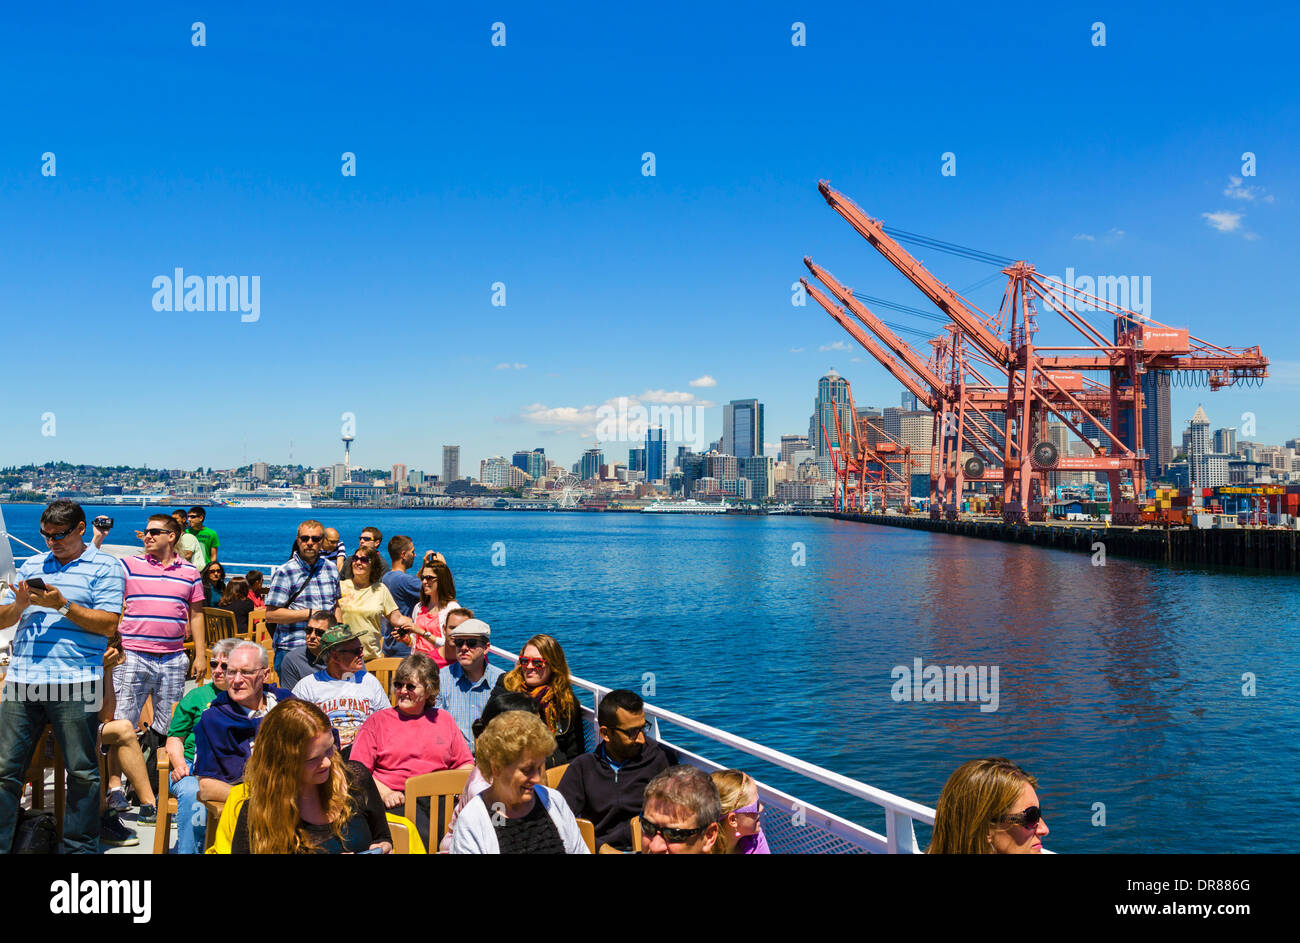 Le port à conteneurs et le centre-ville d'une croisière dans le port Argosy round Puget Sound, Seattle, Washington, USA Banque D'Images